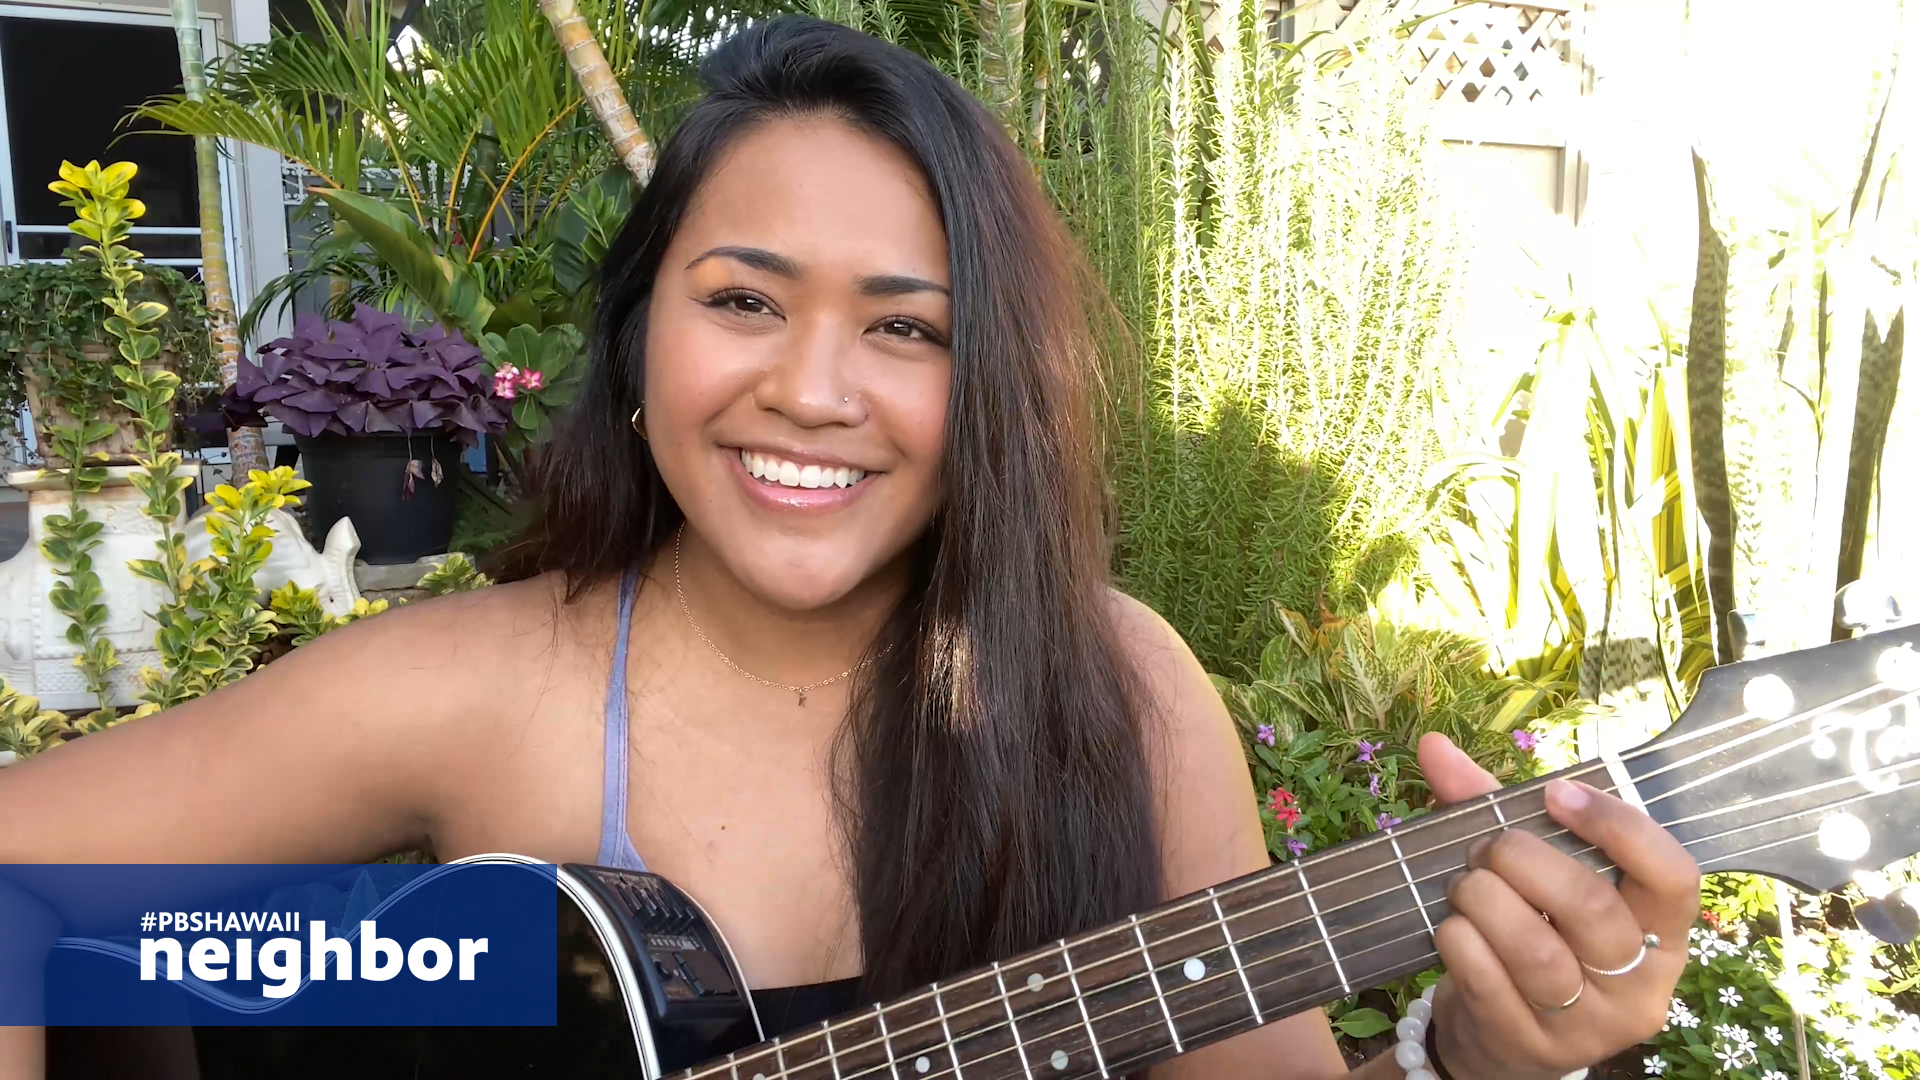 Keilana, Hawaiian, Guitar <br/>#PBSHAWAIIneighbor